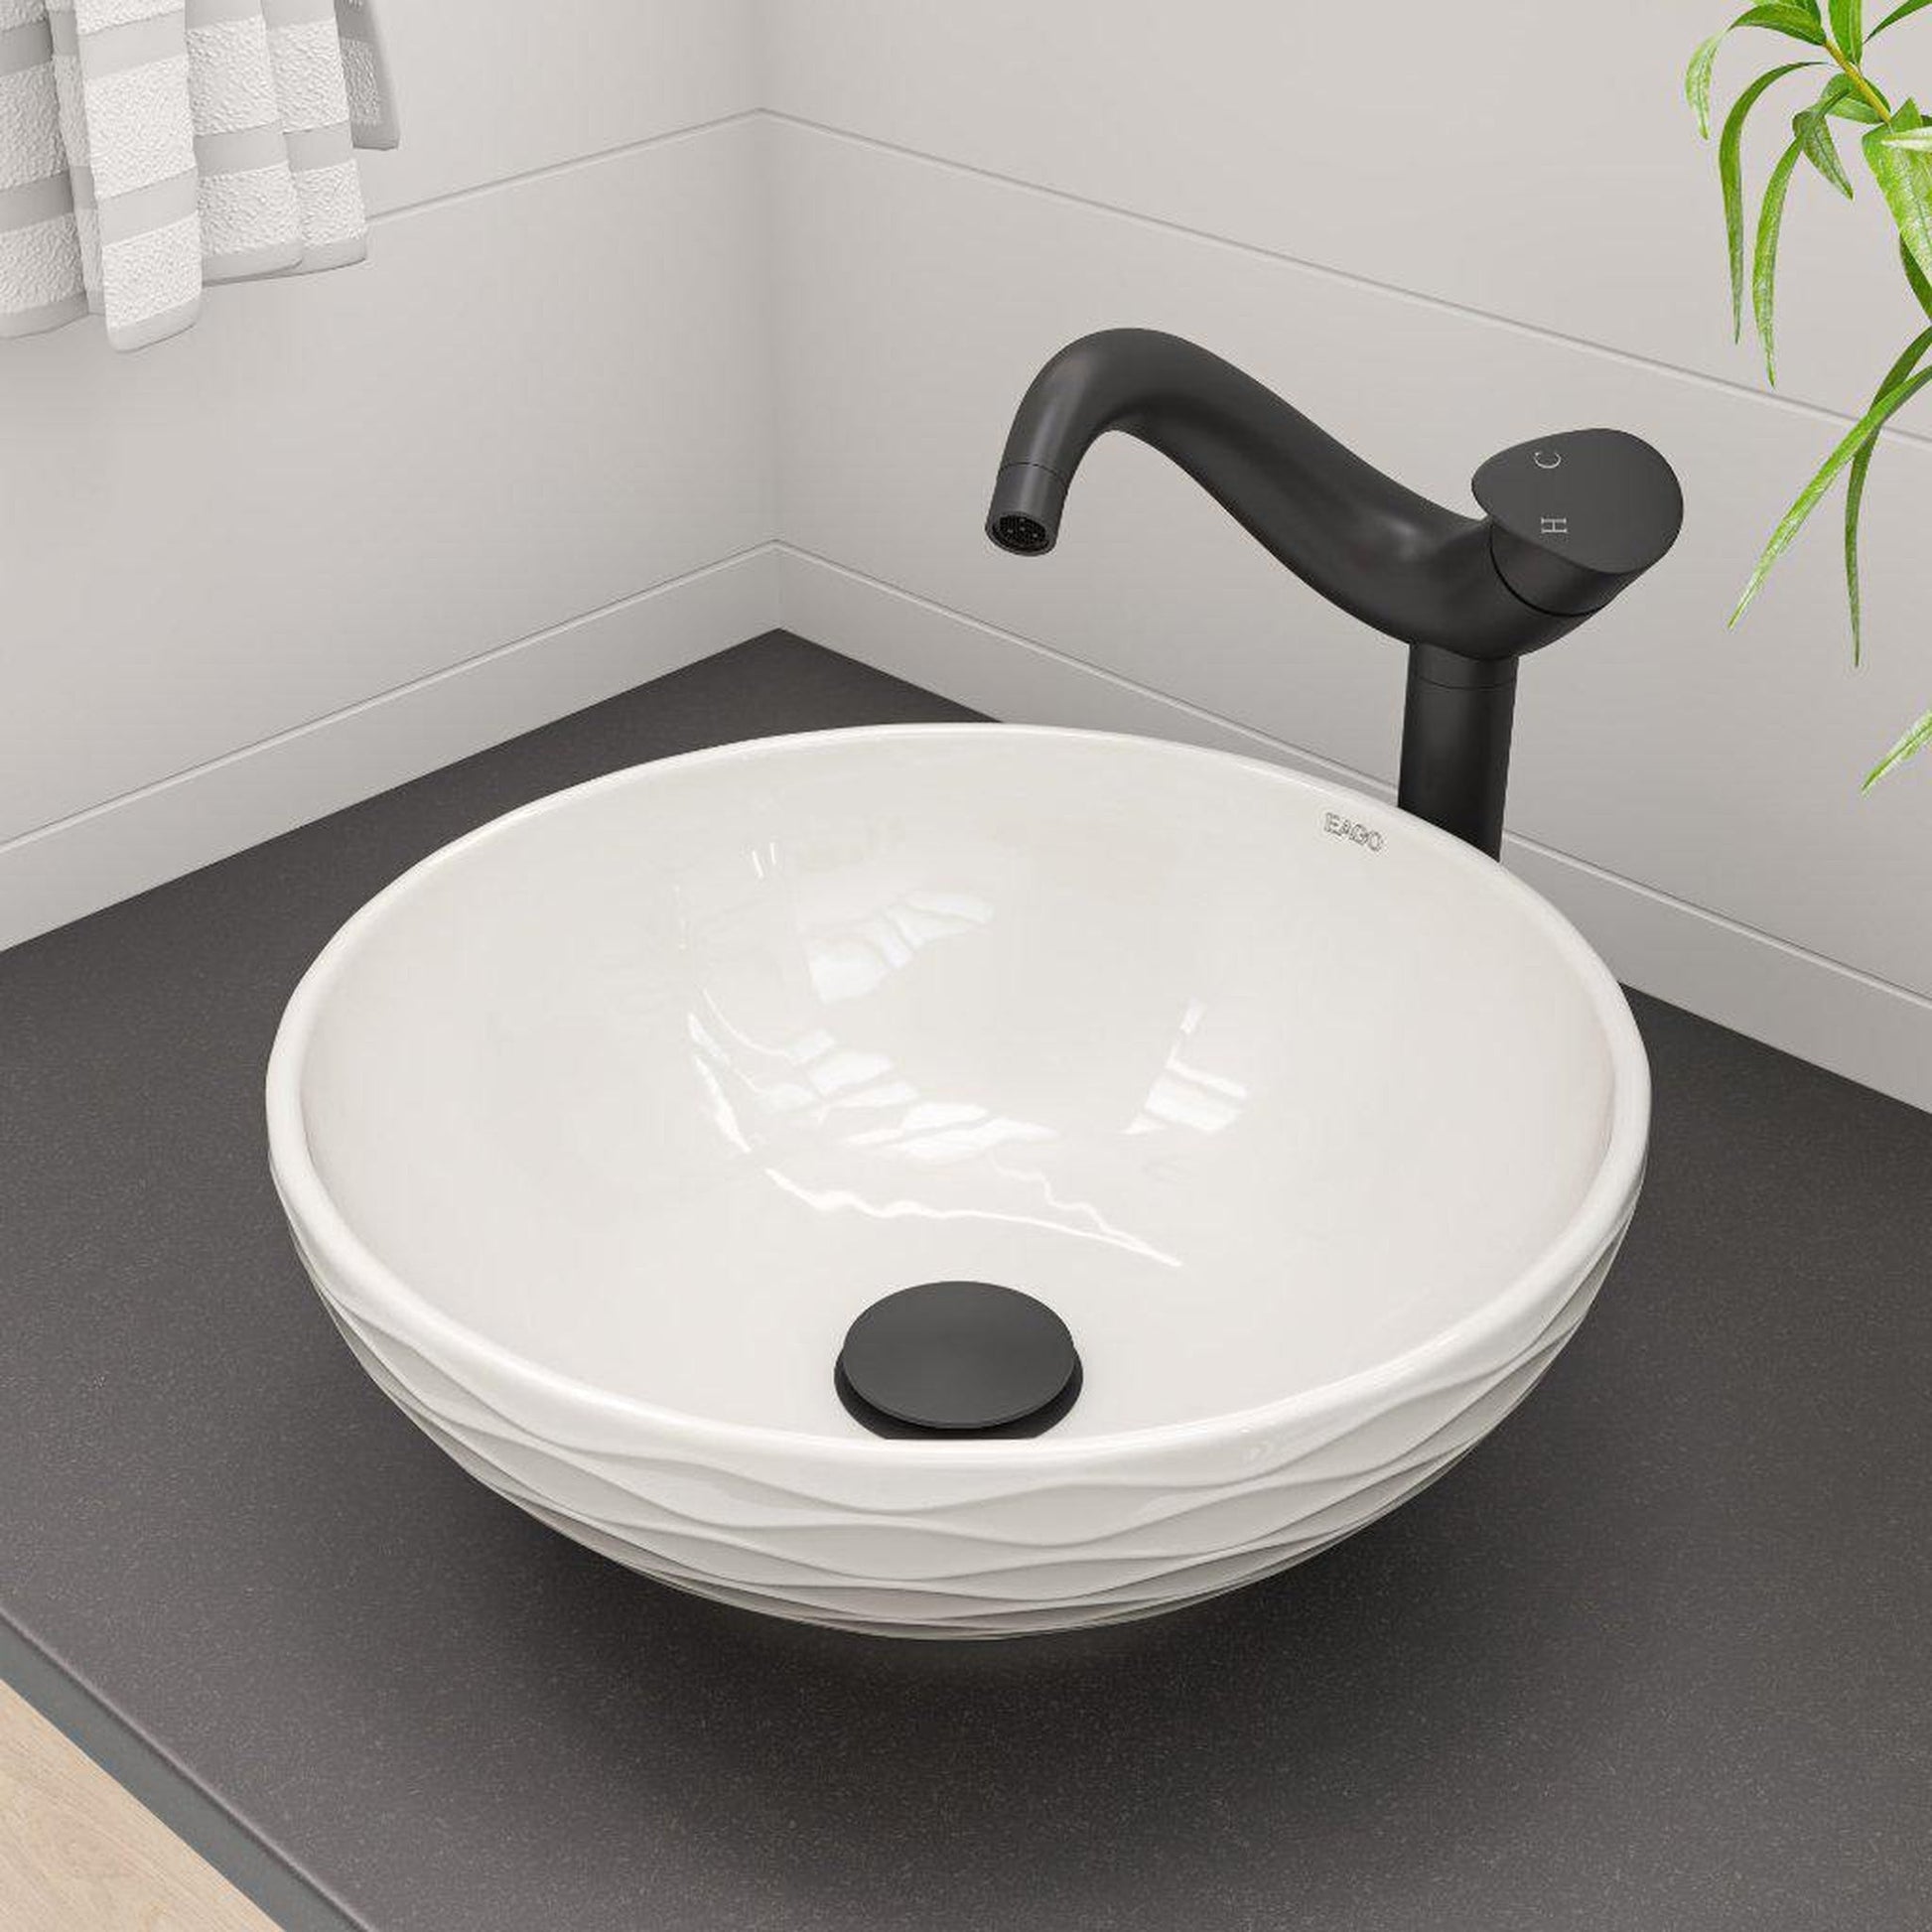 ALFI Brand AB1570-BM Black Matte Vessel Wave Spout Brass Bathroom Sink Faucet With Single Lever